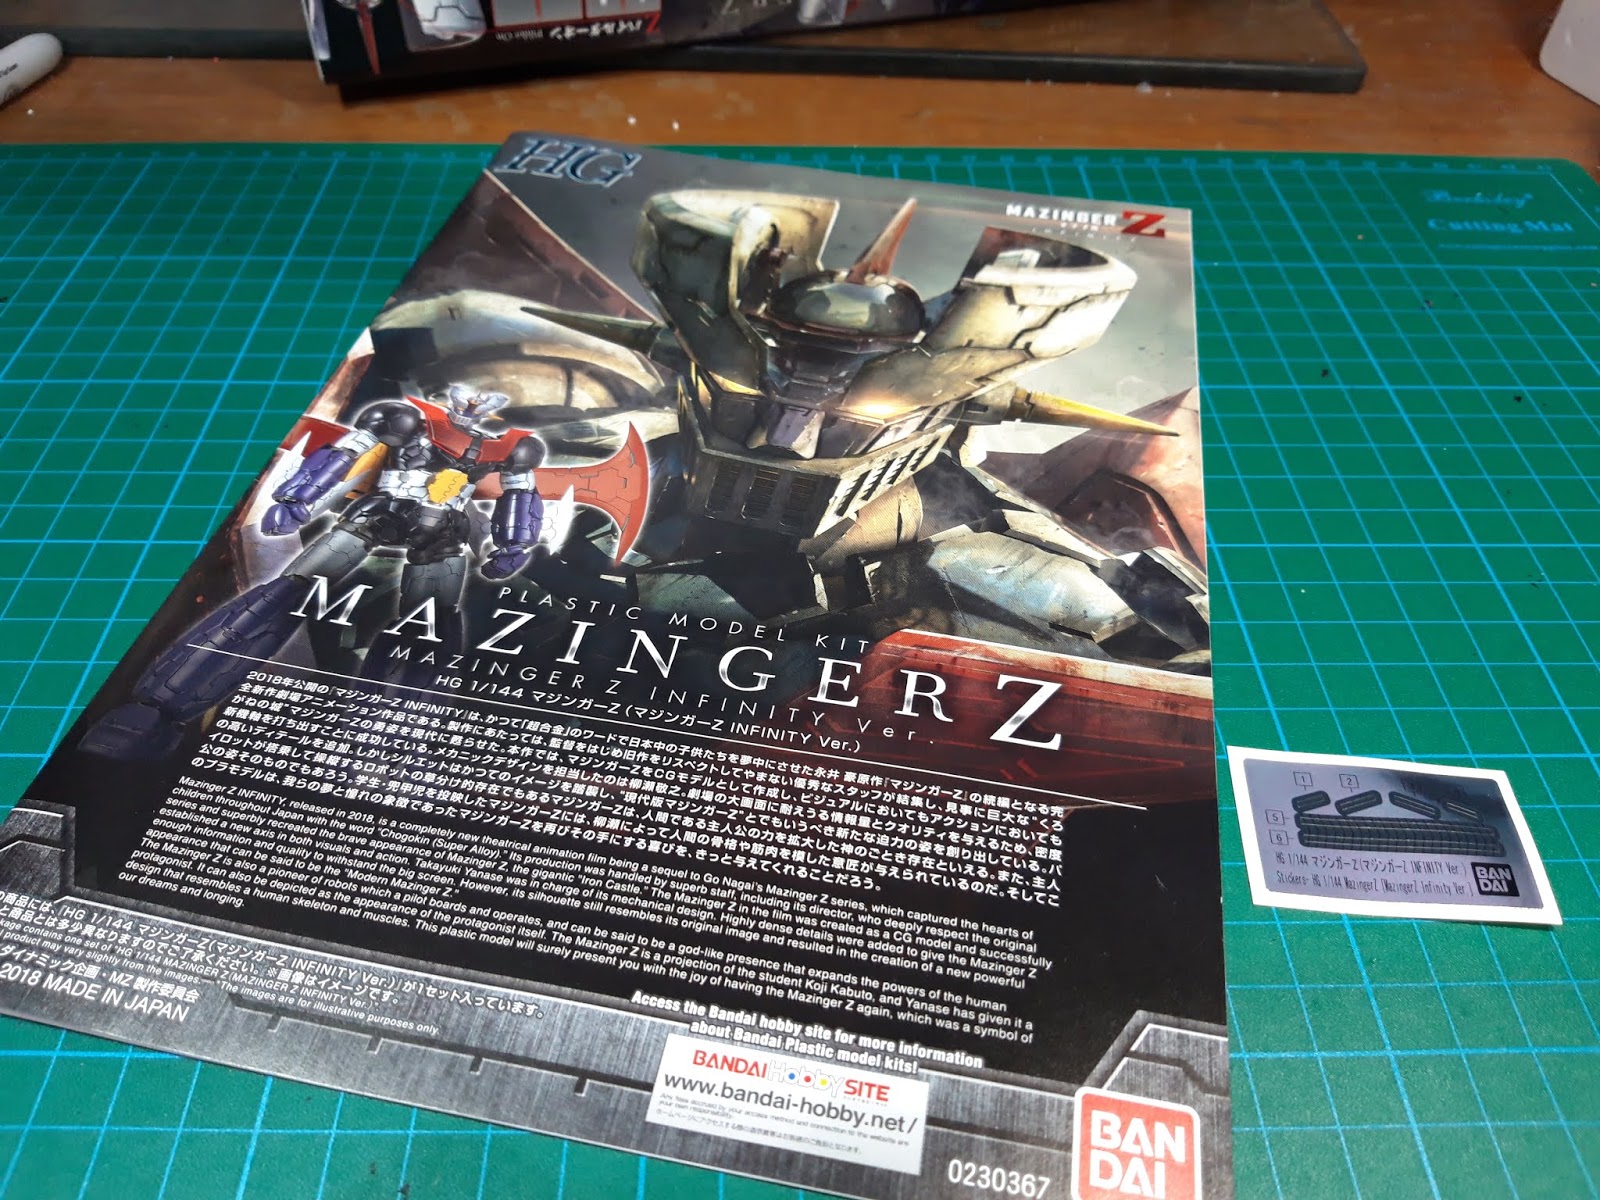 Mazinger Z (Mazinger Z Infinity Ver.), Bandai HG 1/144